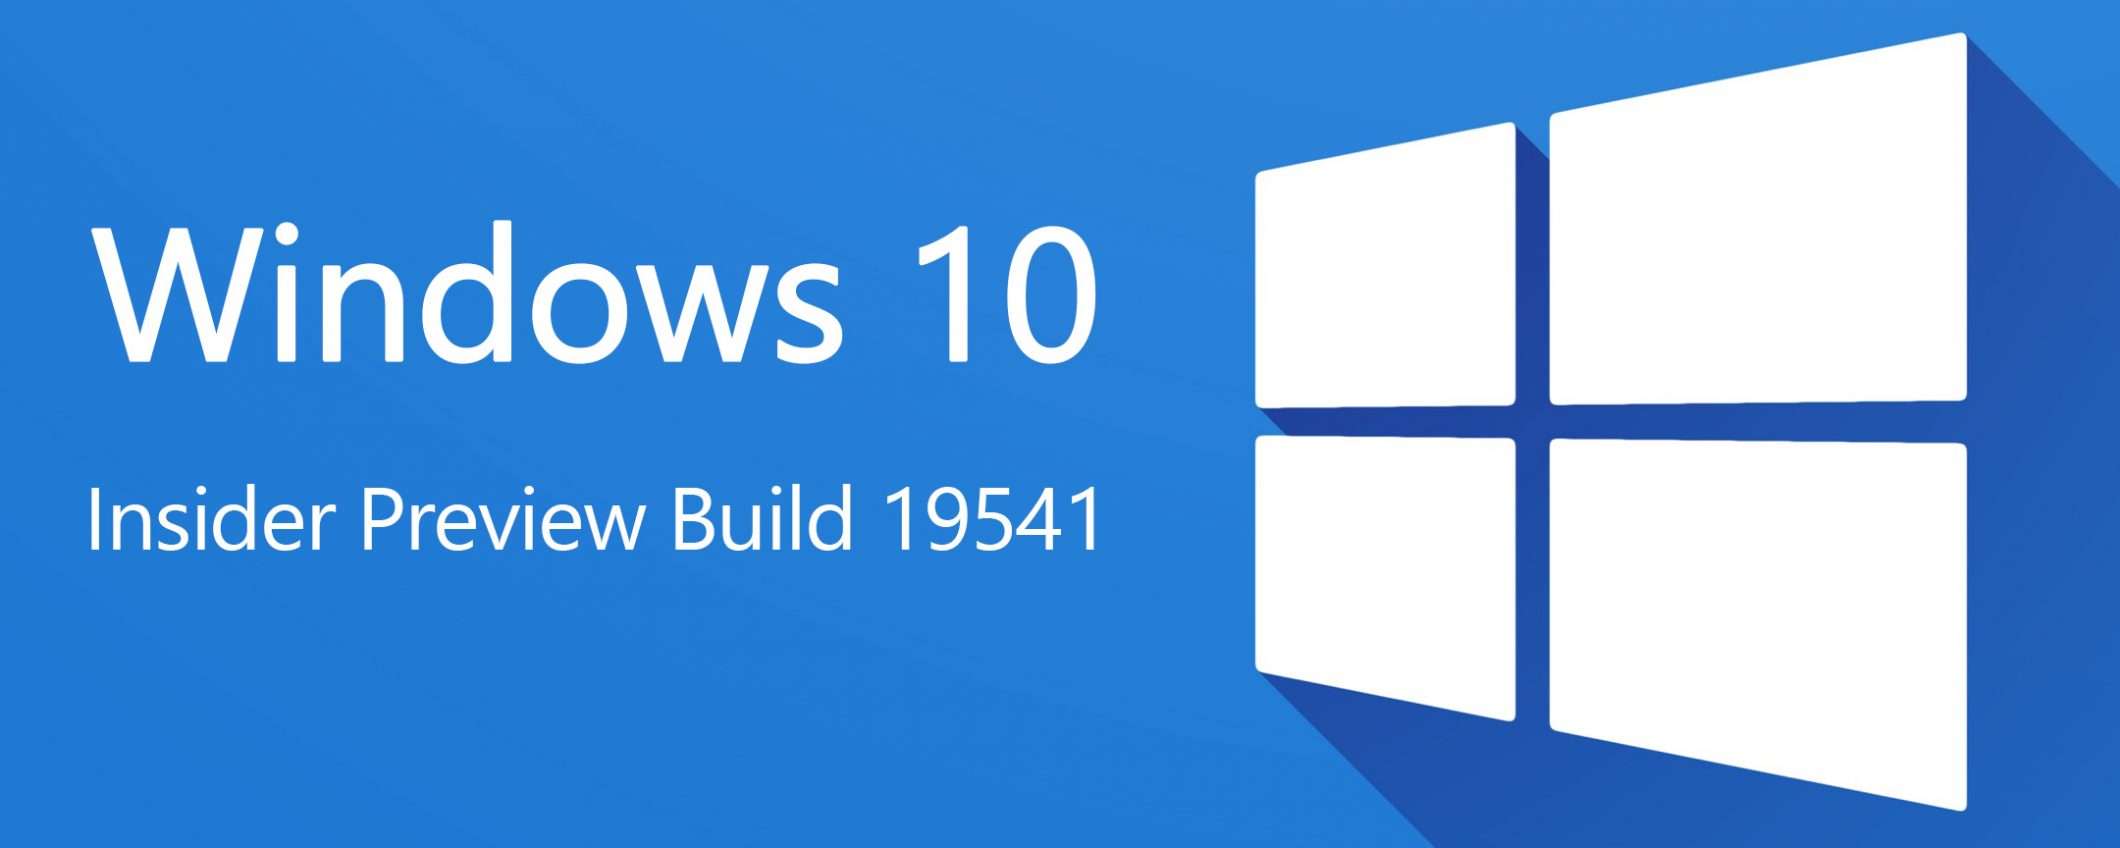 Windows 10, la Preview Build 19541 agli Insider